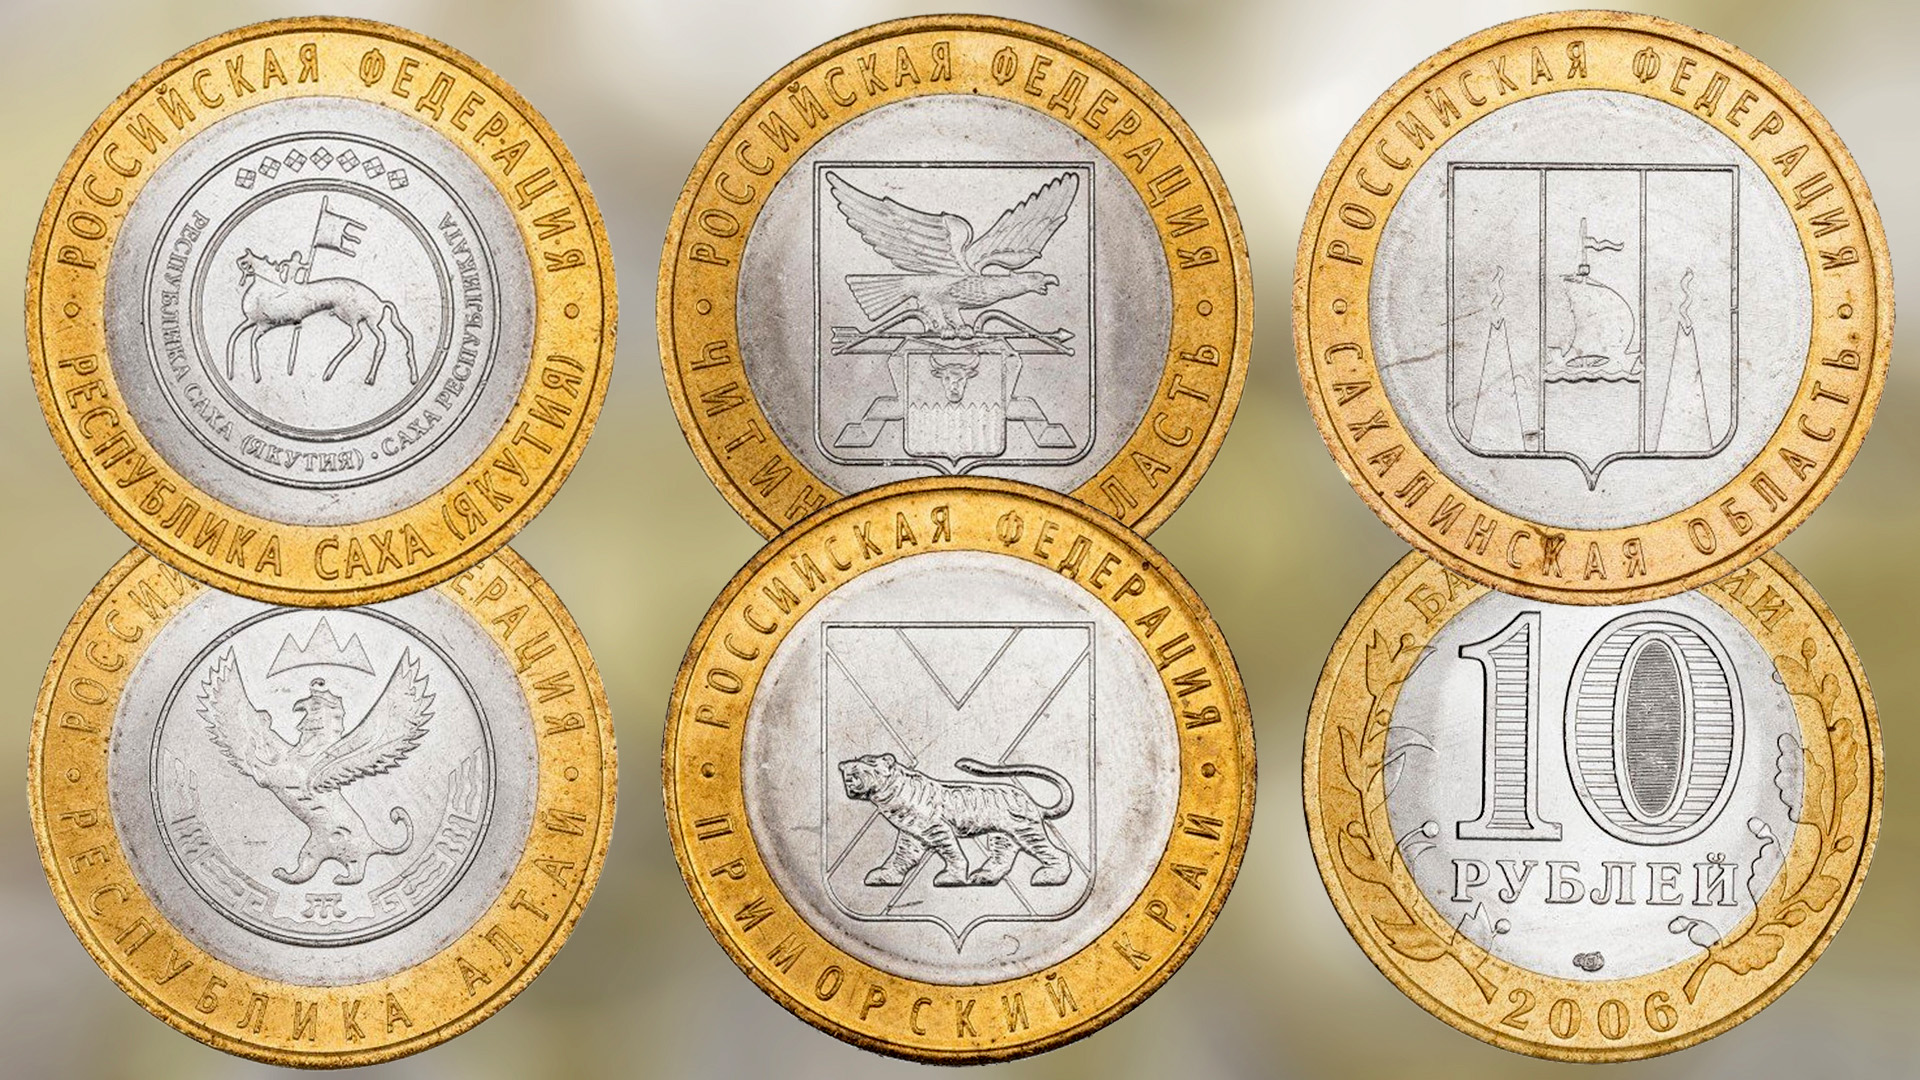 Монеты 10 рублей серии Российская Федерация выпуска 2006 года.